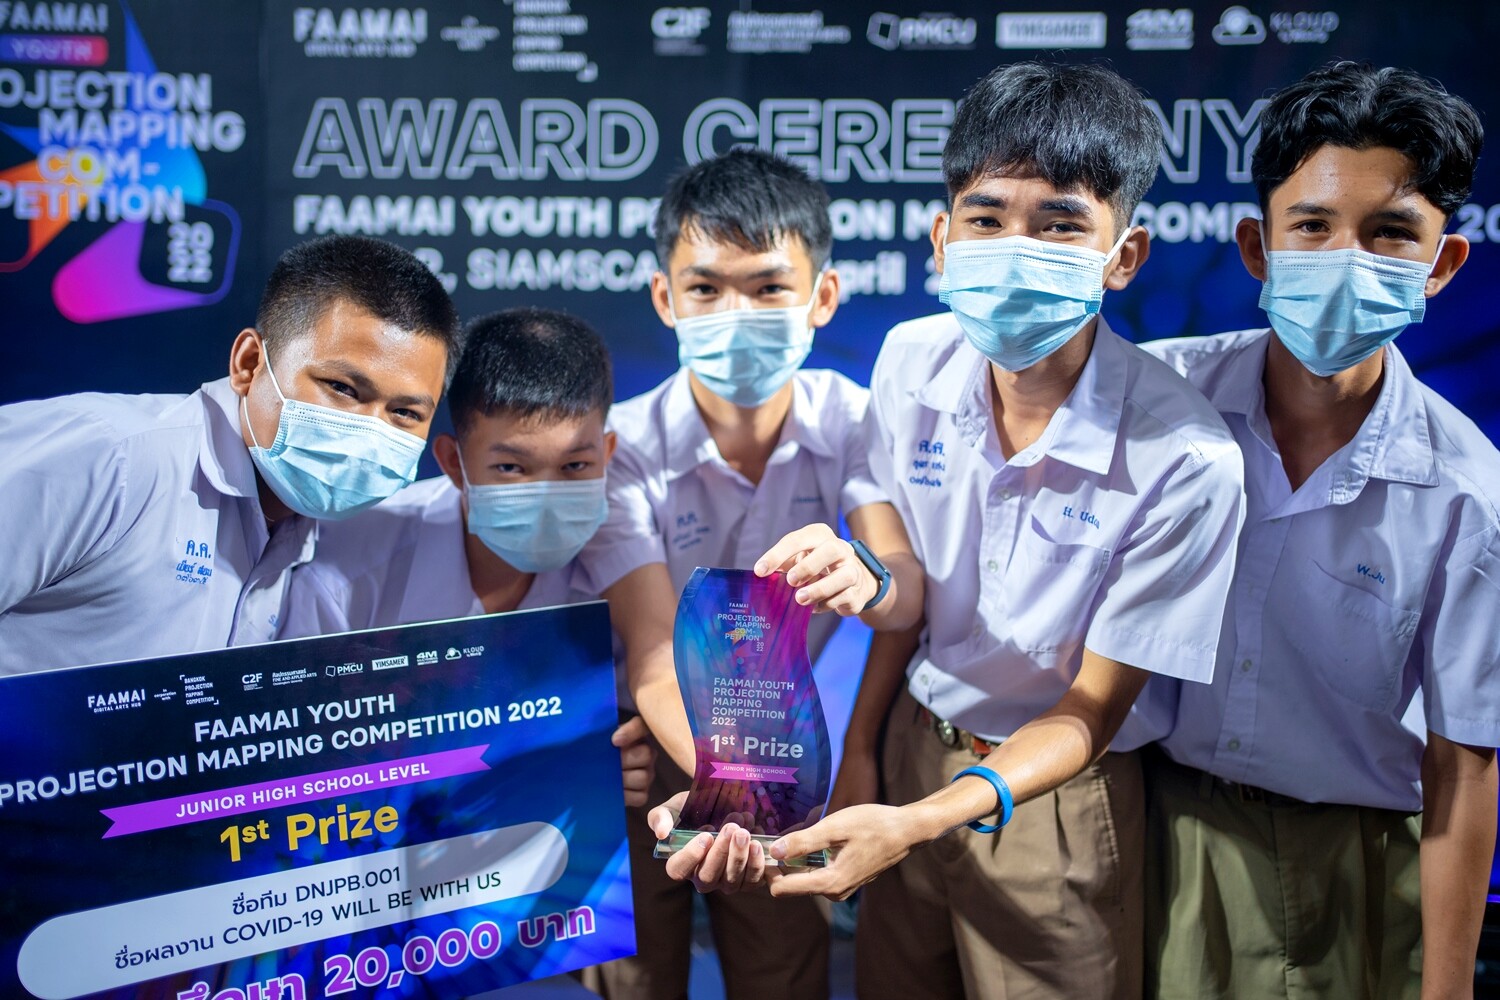 เด็กมัธยมฯ ทีม"DNJPB.001" และทีม"MASKISM" โชว์เจ๋งคว้ารางวัลชนะเลิศการประกวด FAAMAI Youth Projection Mapping Competition 2022 ครั้งแรกในประเทศไทย